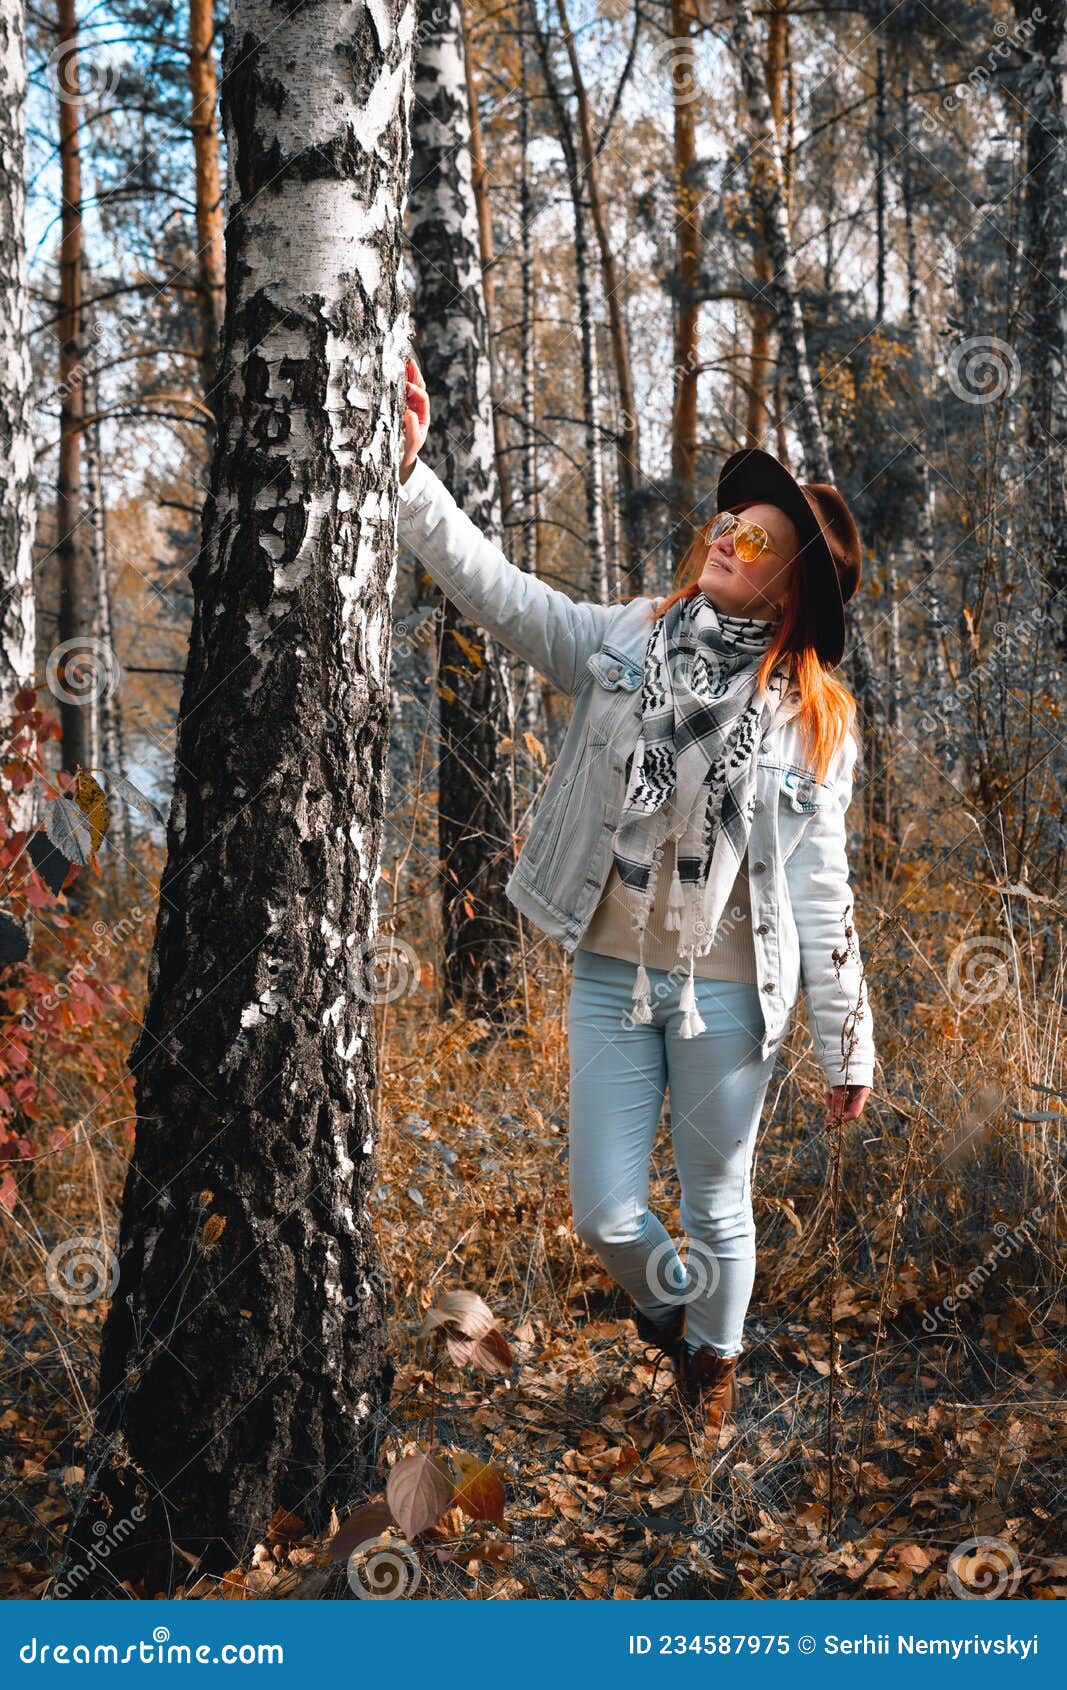 birch forest Jaket